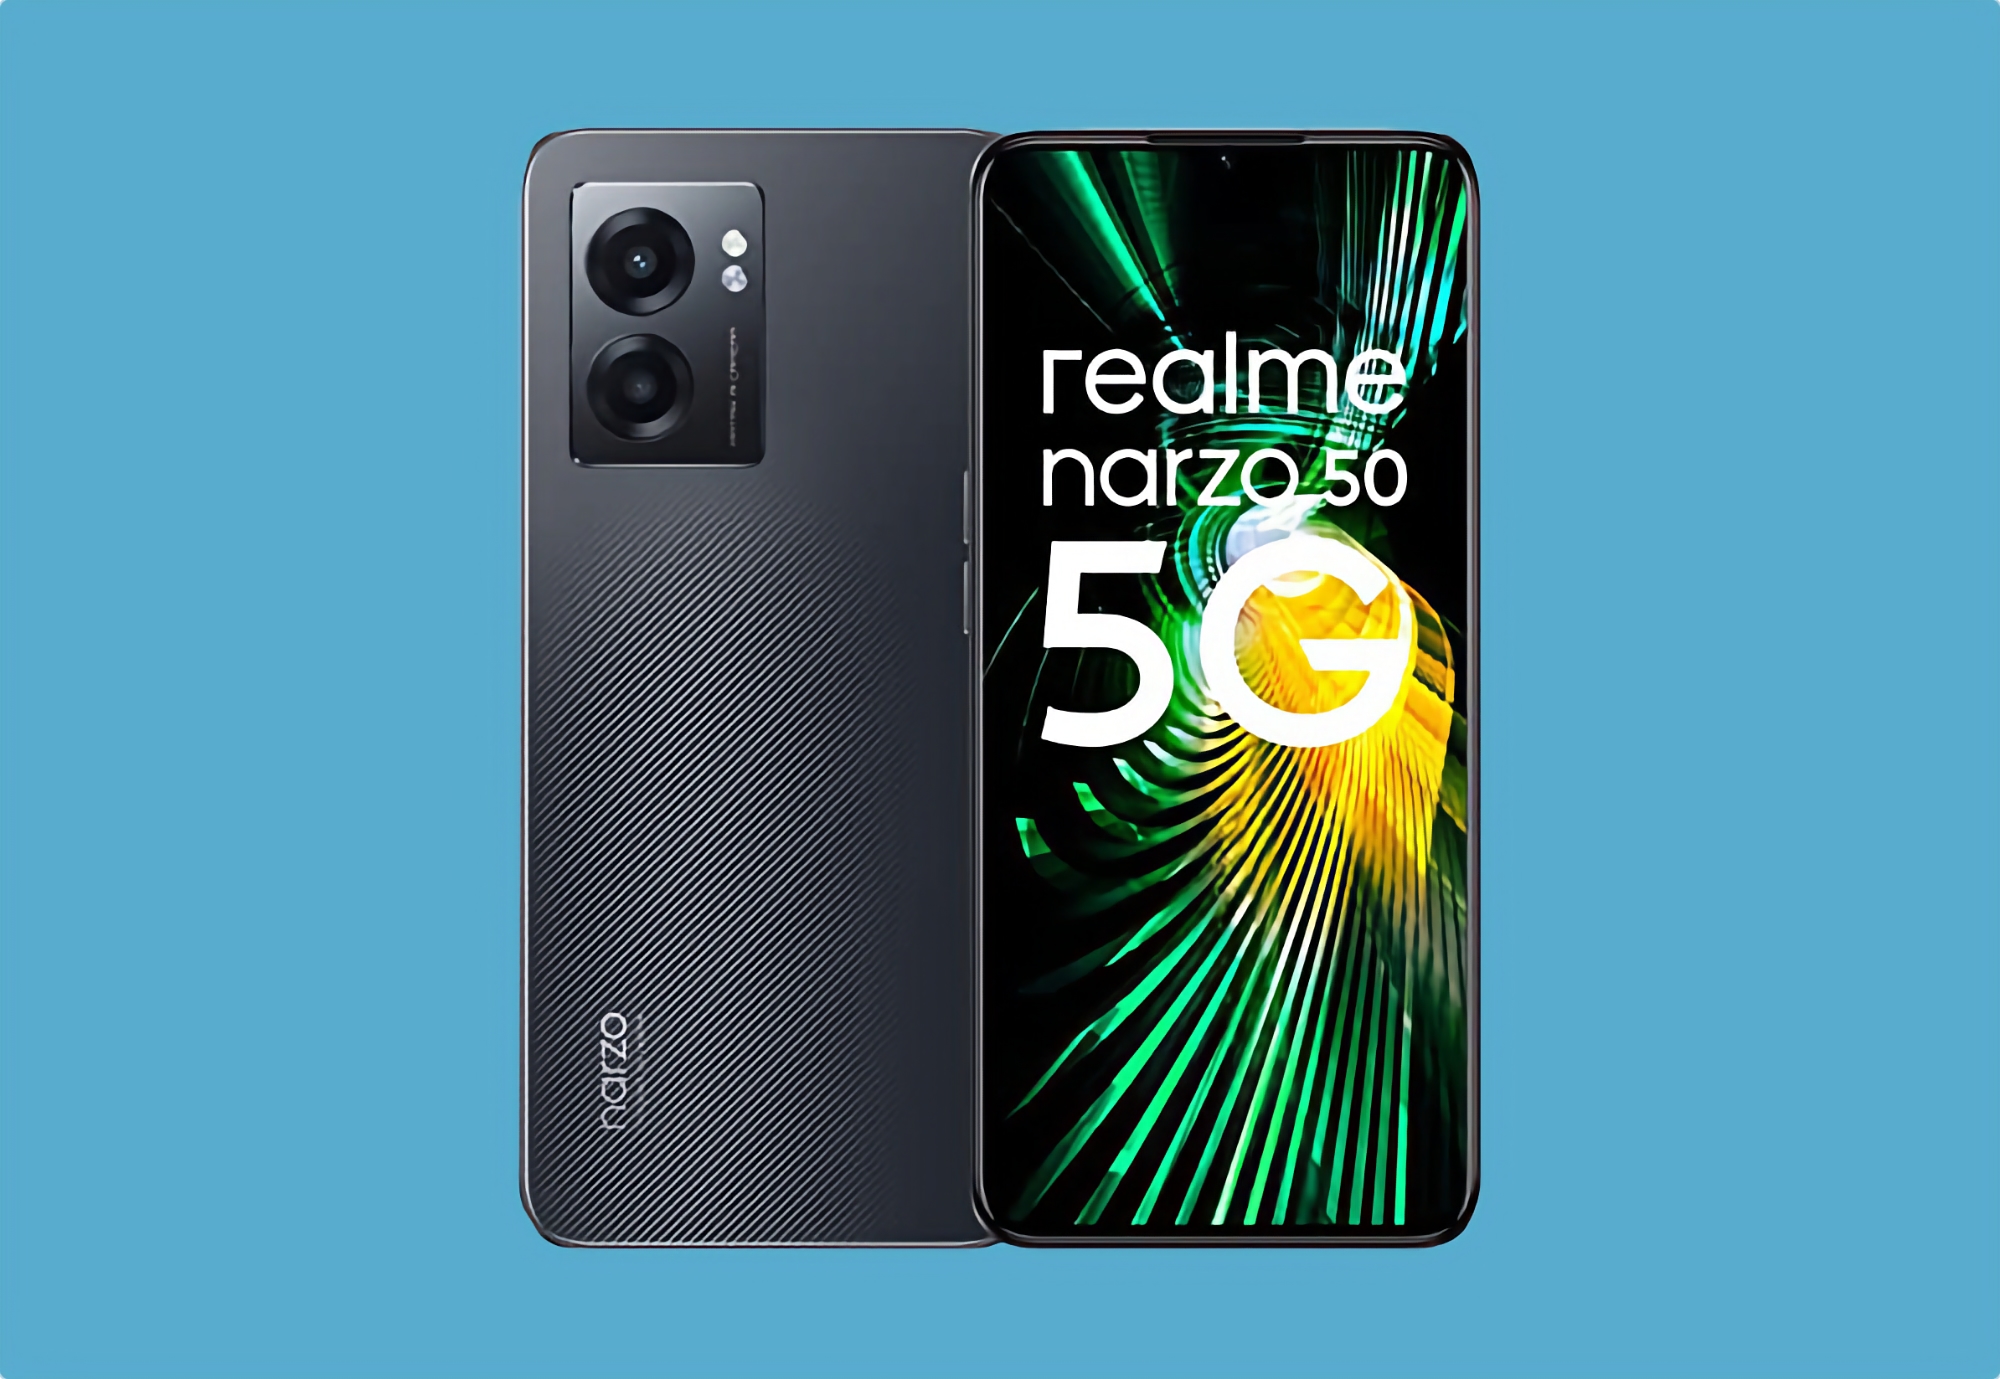 realme Narzo 50 con schermo a 90 Hz, chip Dimensity 810, batteria da 5000 mAh e NFC è in vendita su Amazon a 129 euro (30 euro di sconto)